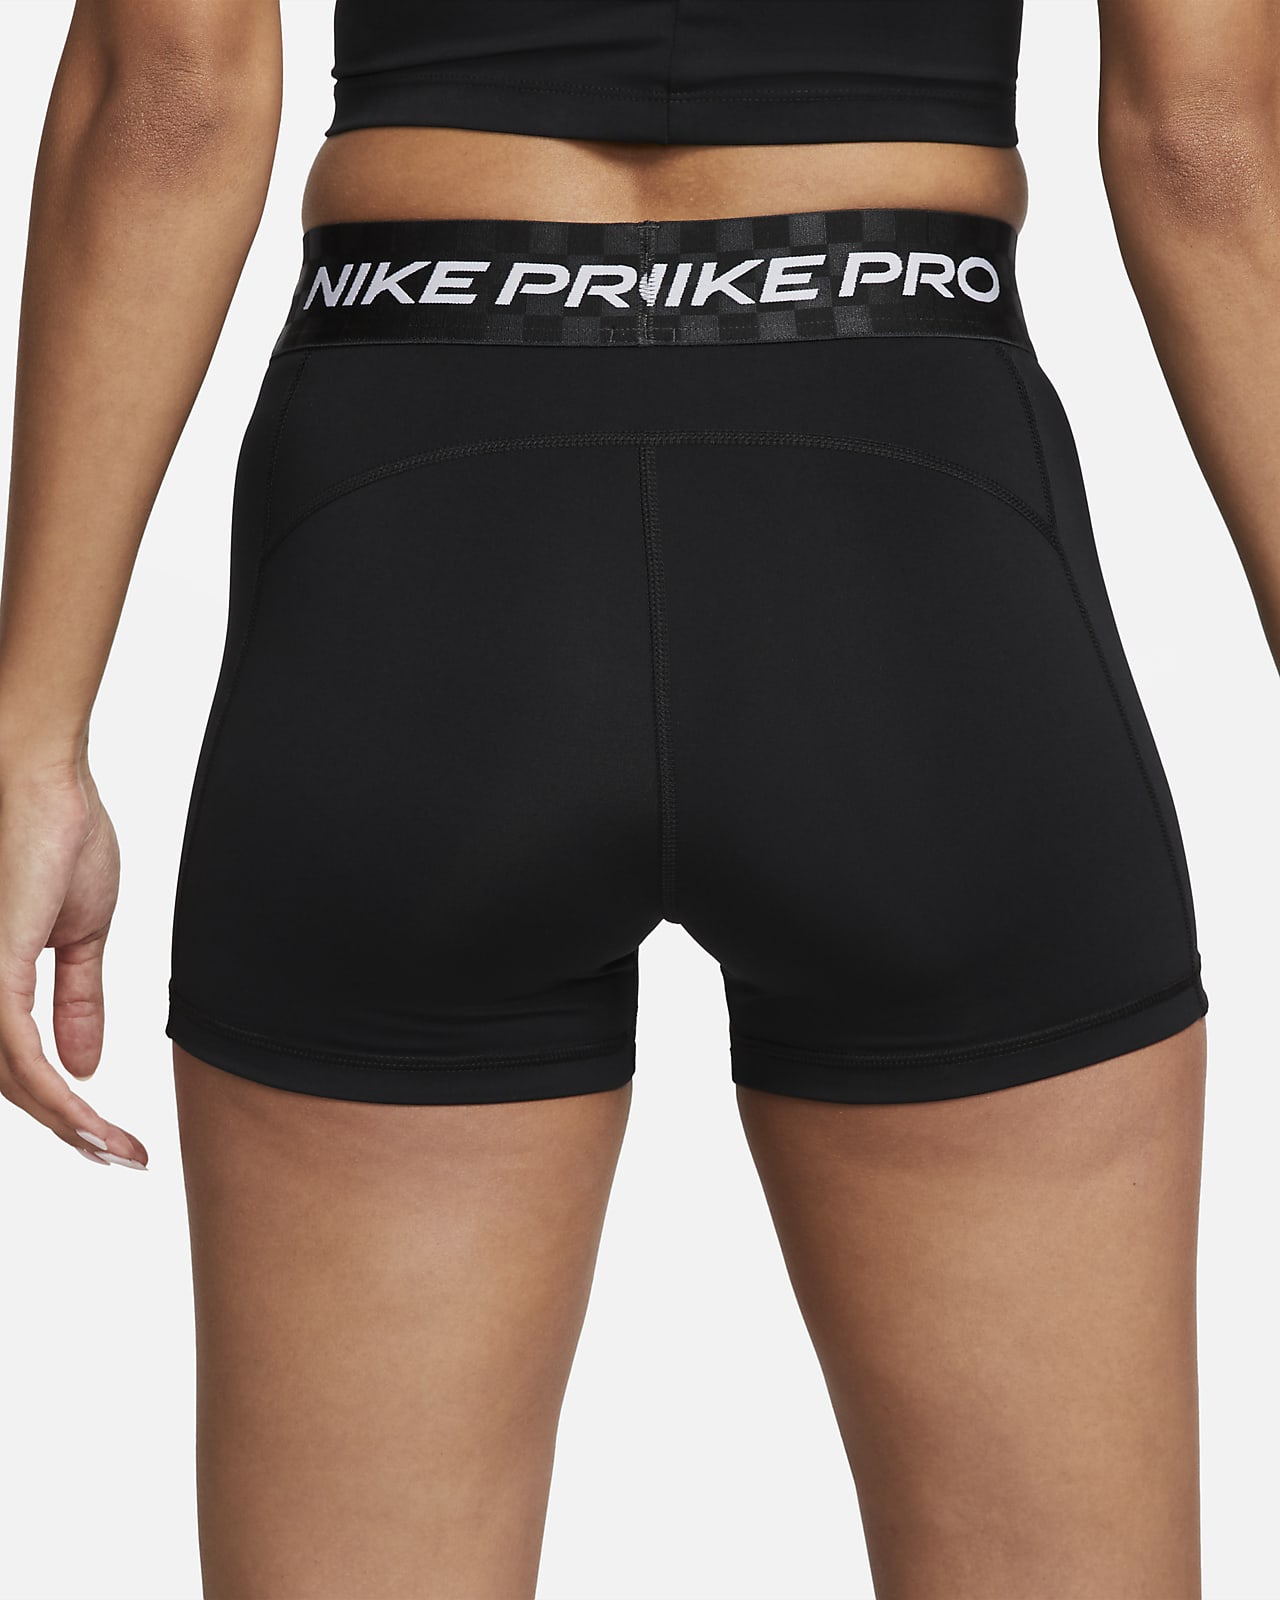 11 Nike pro shorts ideas  gym shorts womens, nike pro shorts, workout  clothes